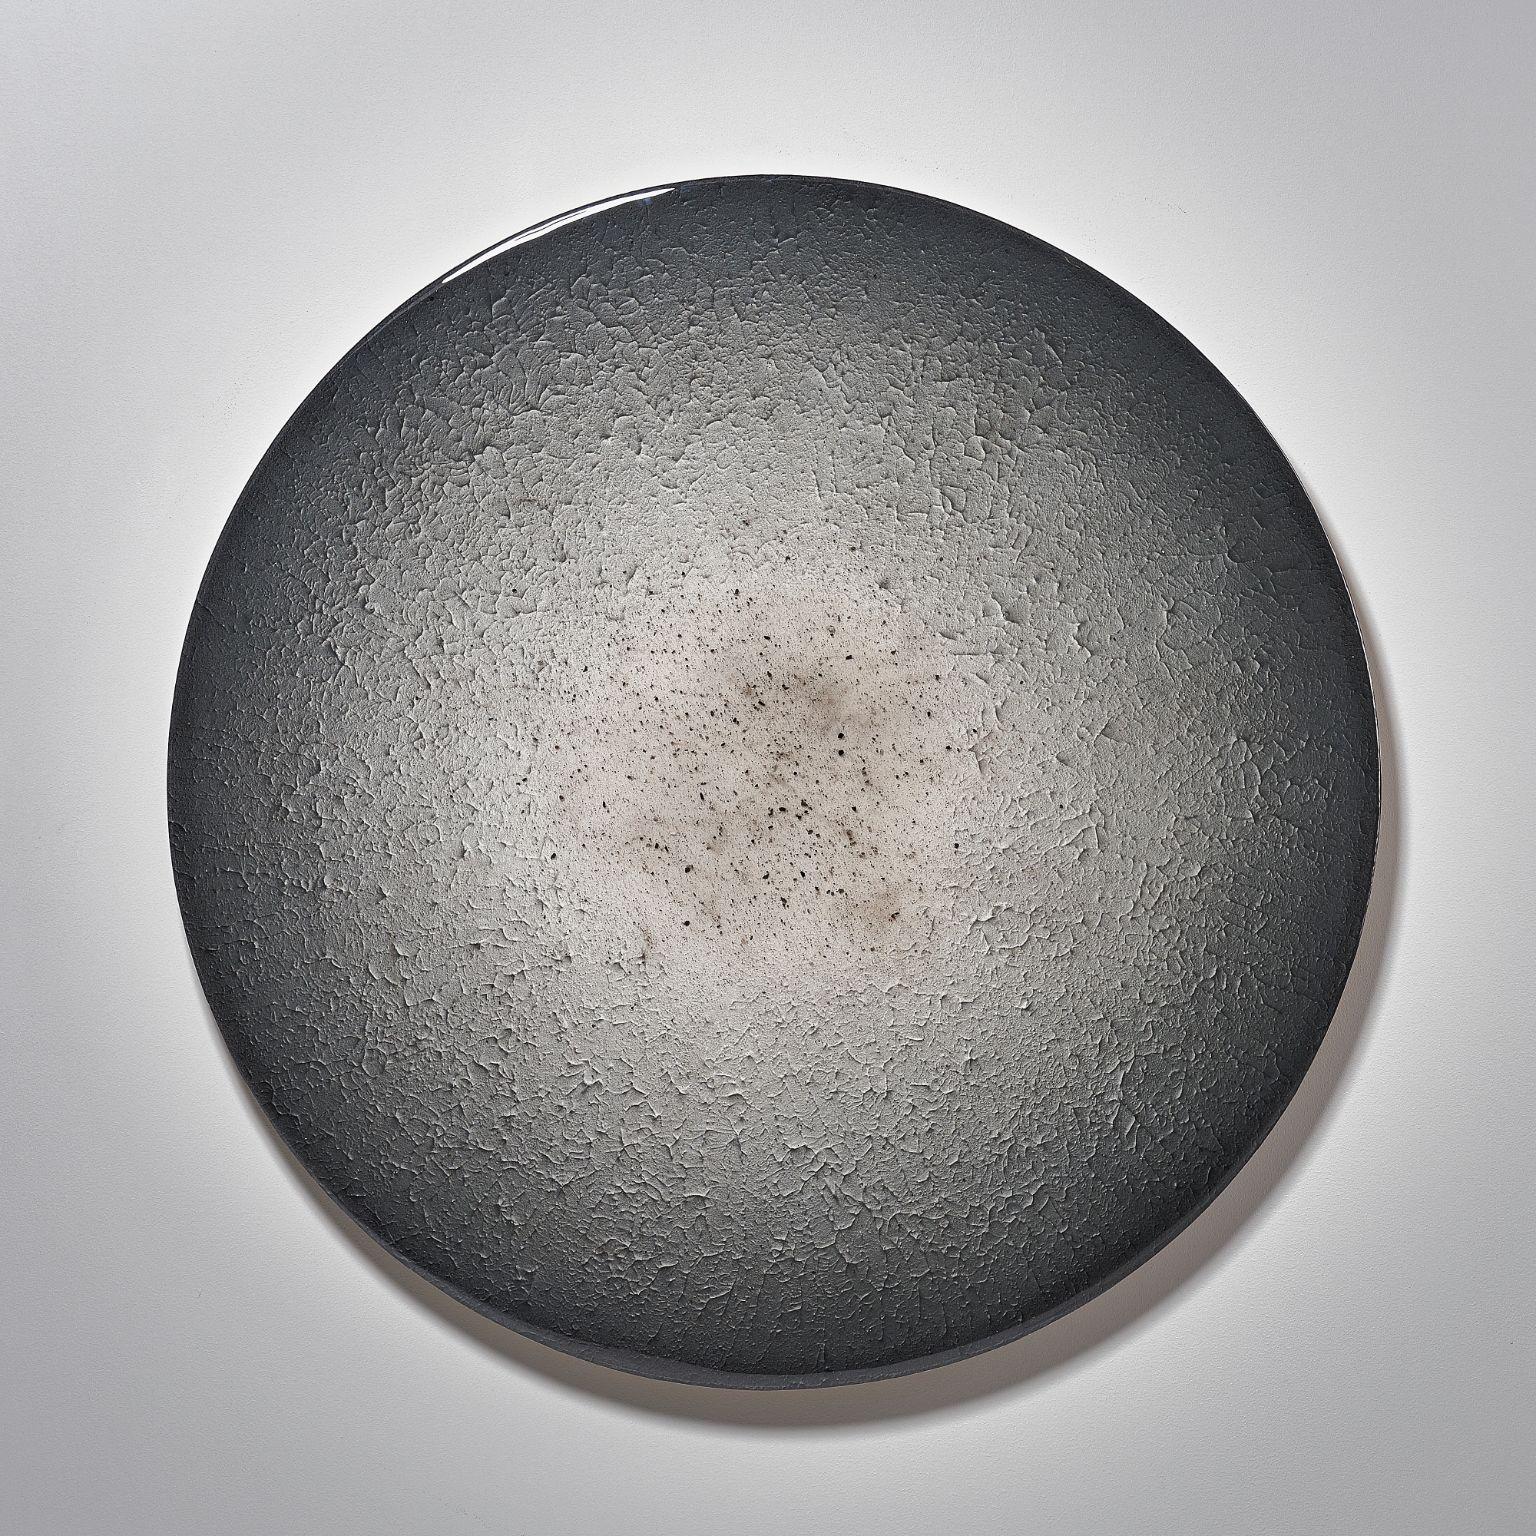 Ash minimaliste rond de Corine Vanvoorbergen
Dimensions : diamètre 130 cm
Matériaux : Laiton, bois, frêne, époxy et acrylique

 Le cendre symbolise le résultat, presque comme une relique de la passion intense qui a précédé. Ce n'est jamais la fin,